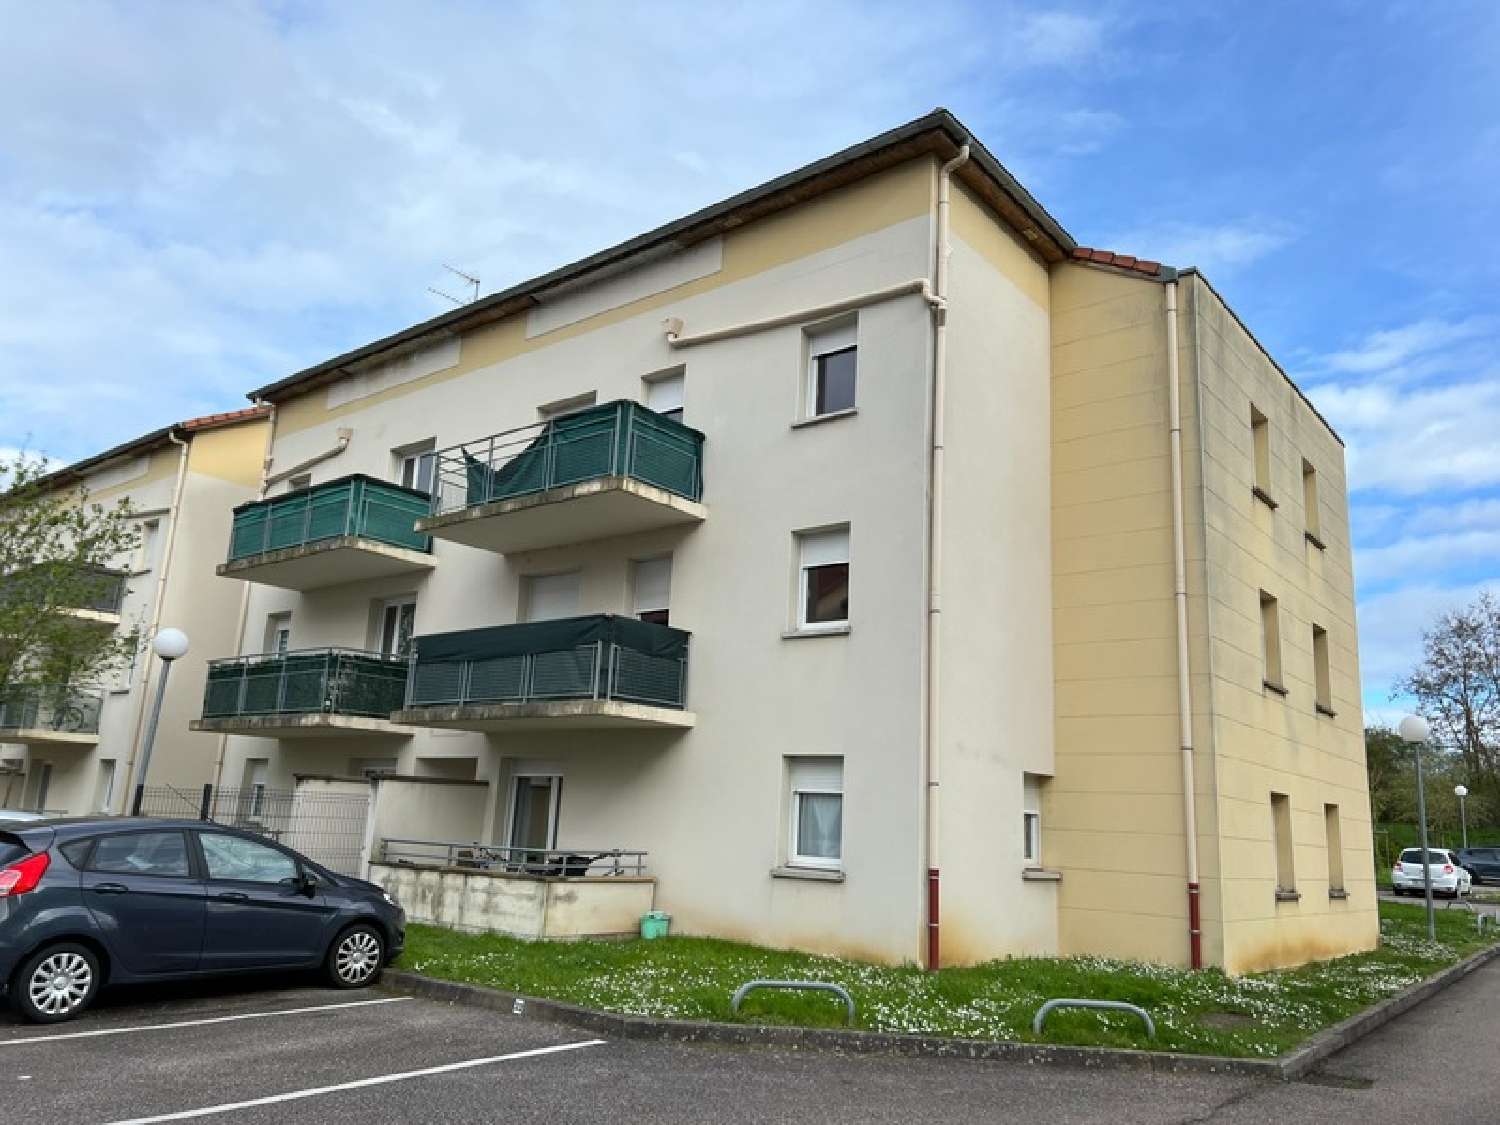  à vendre appartement Essey-lès-Nancy Meurthe-et-Moselle 8